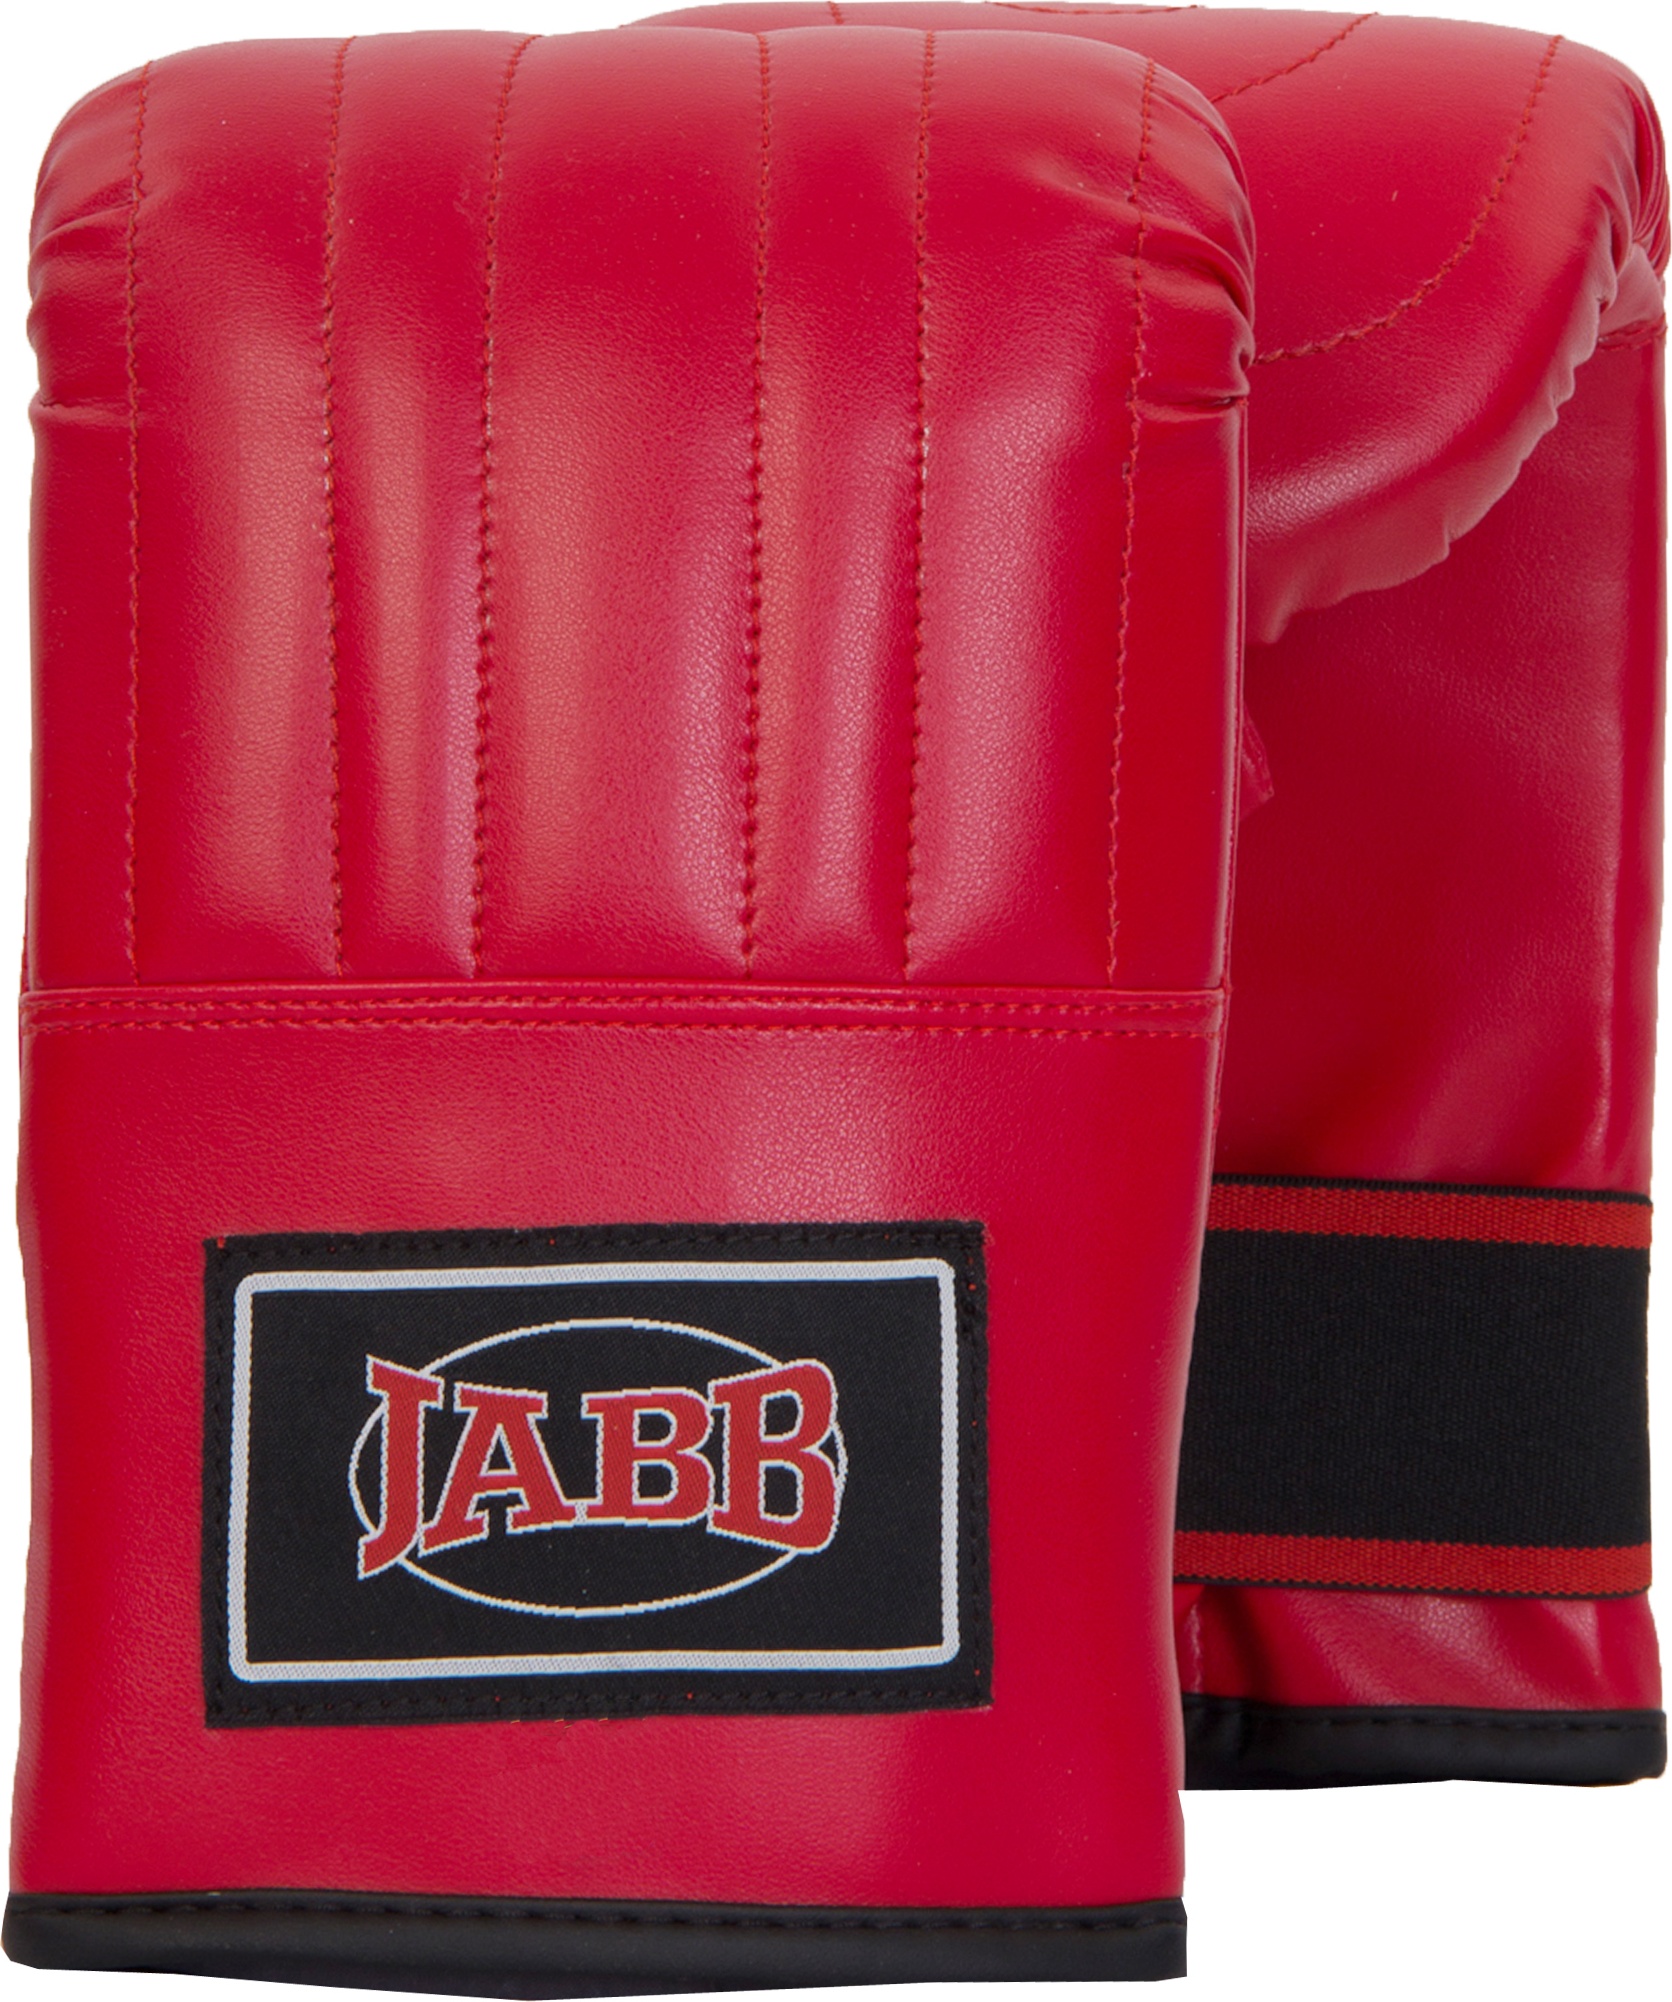 Снарядные перчатки Jabb JE-2075, красный, L